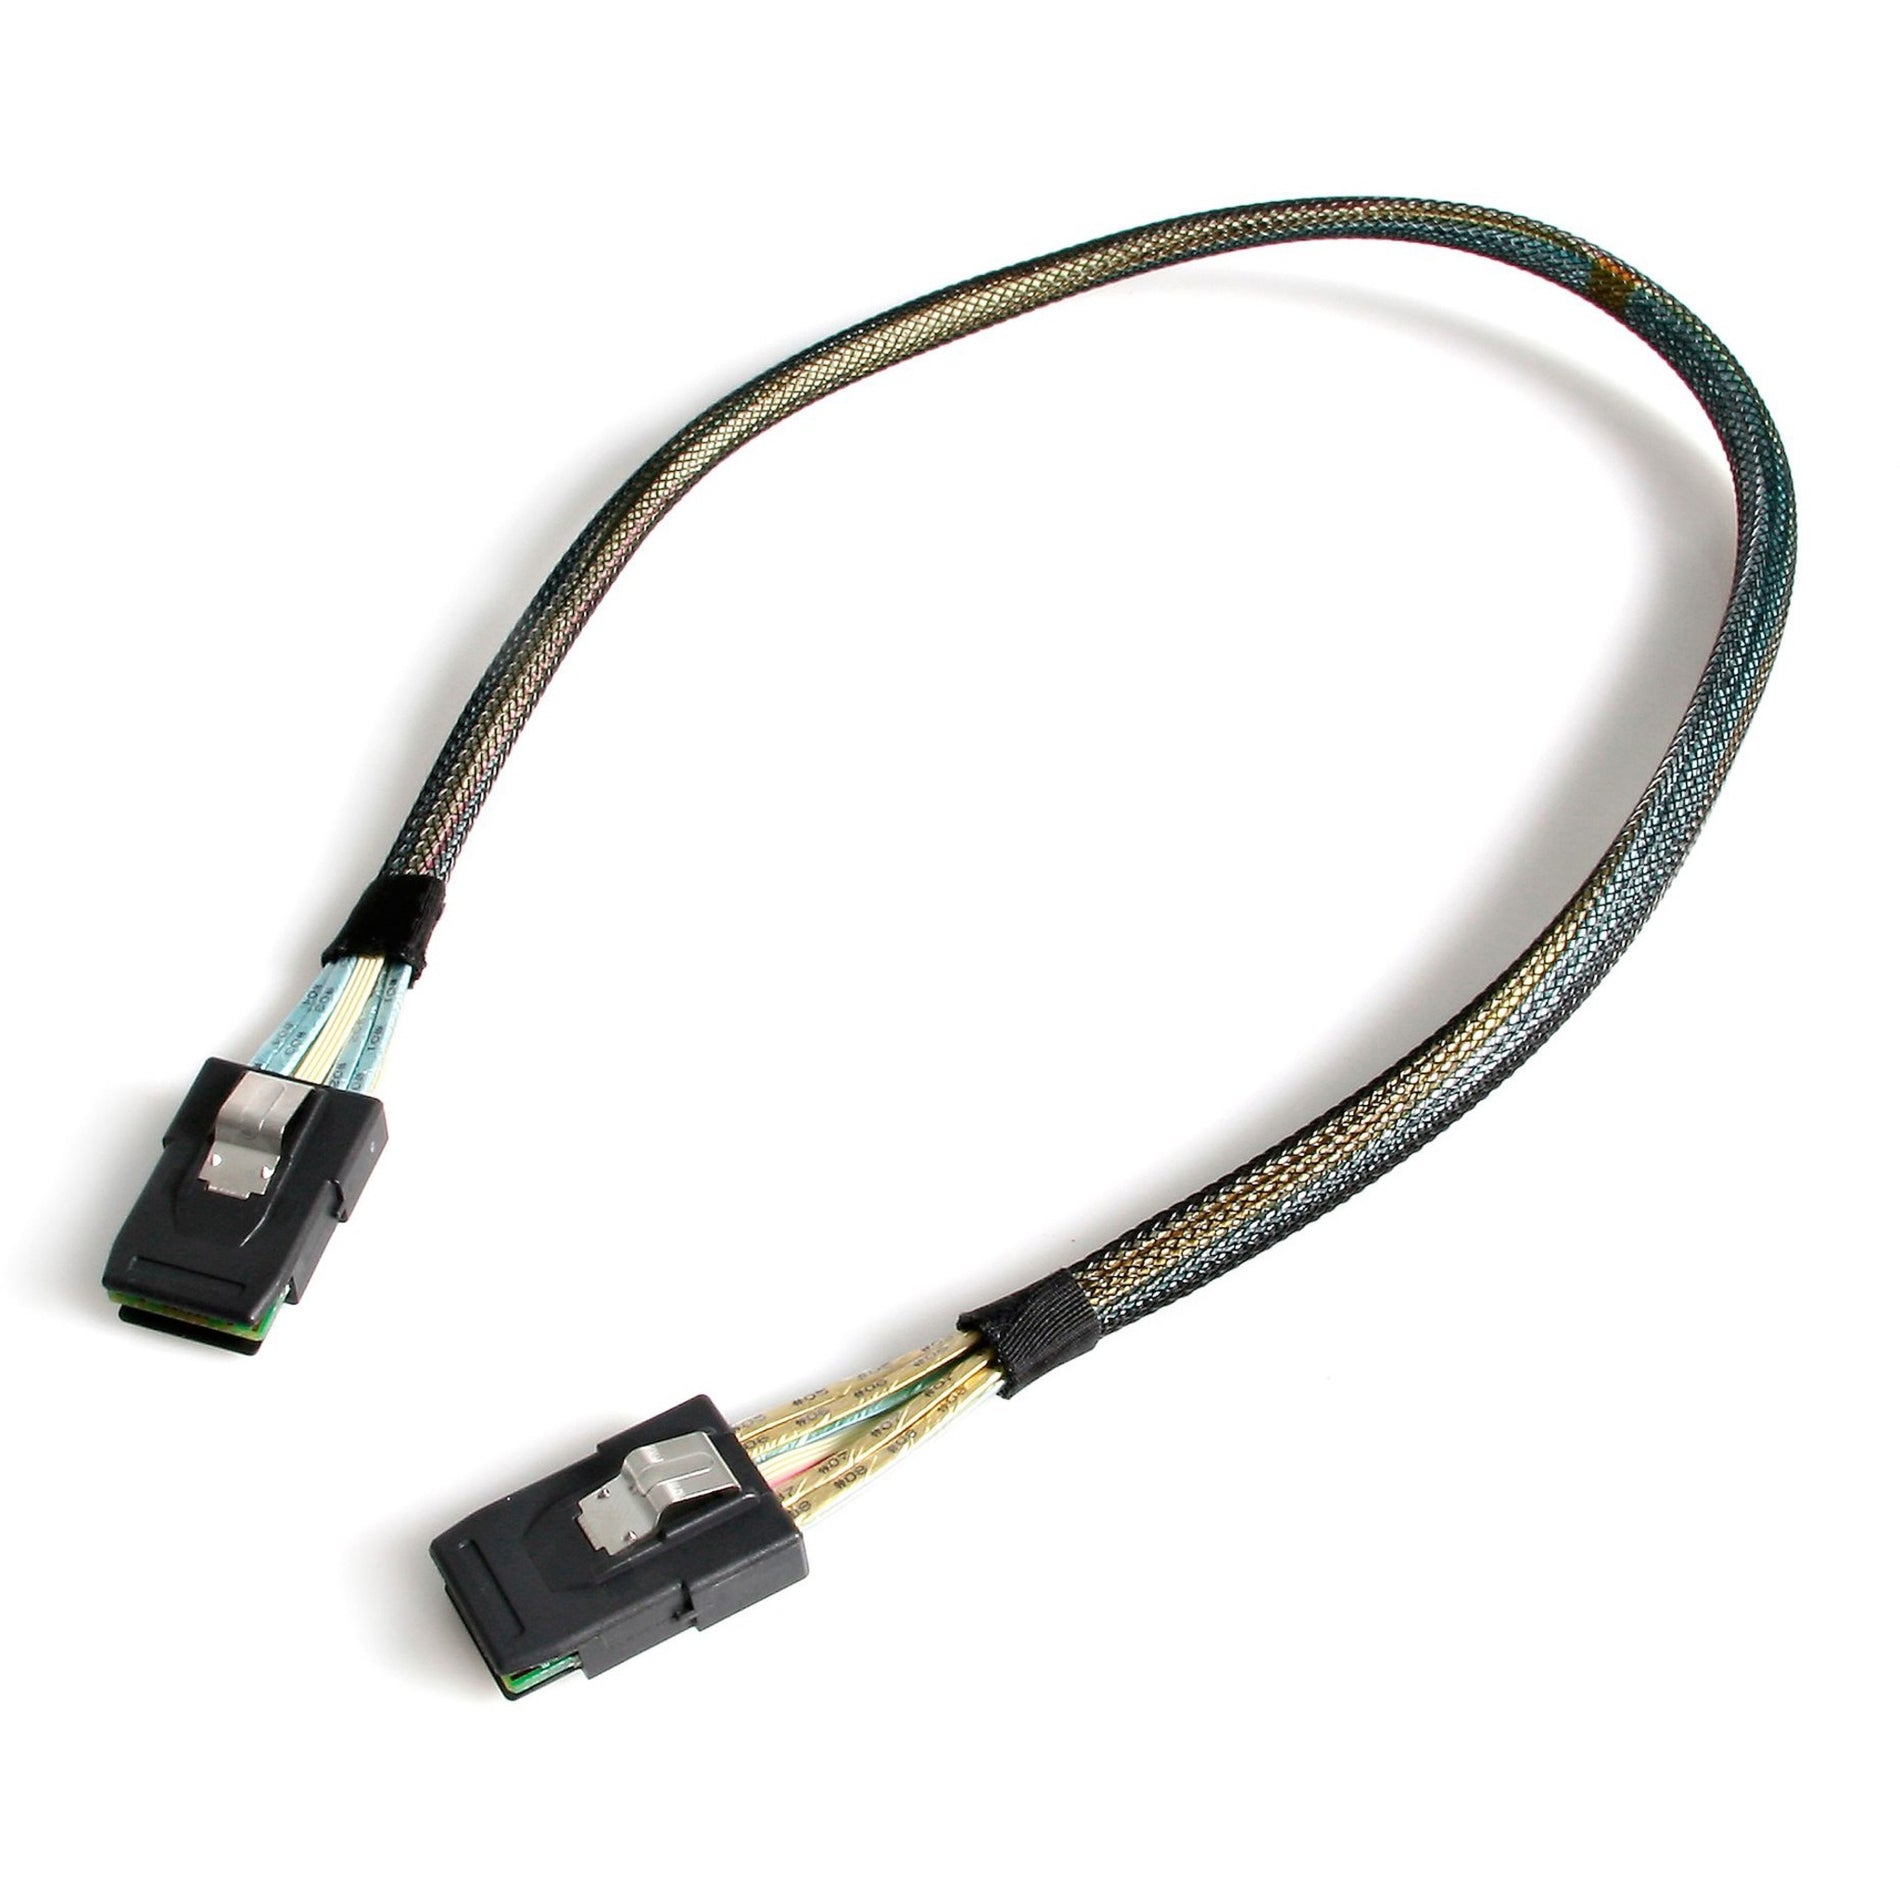 StarTech.com SAS878750 50cm Mini-SAS Cable SFF-8087 To SFF-8087, Data Transfer Cable